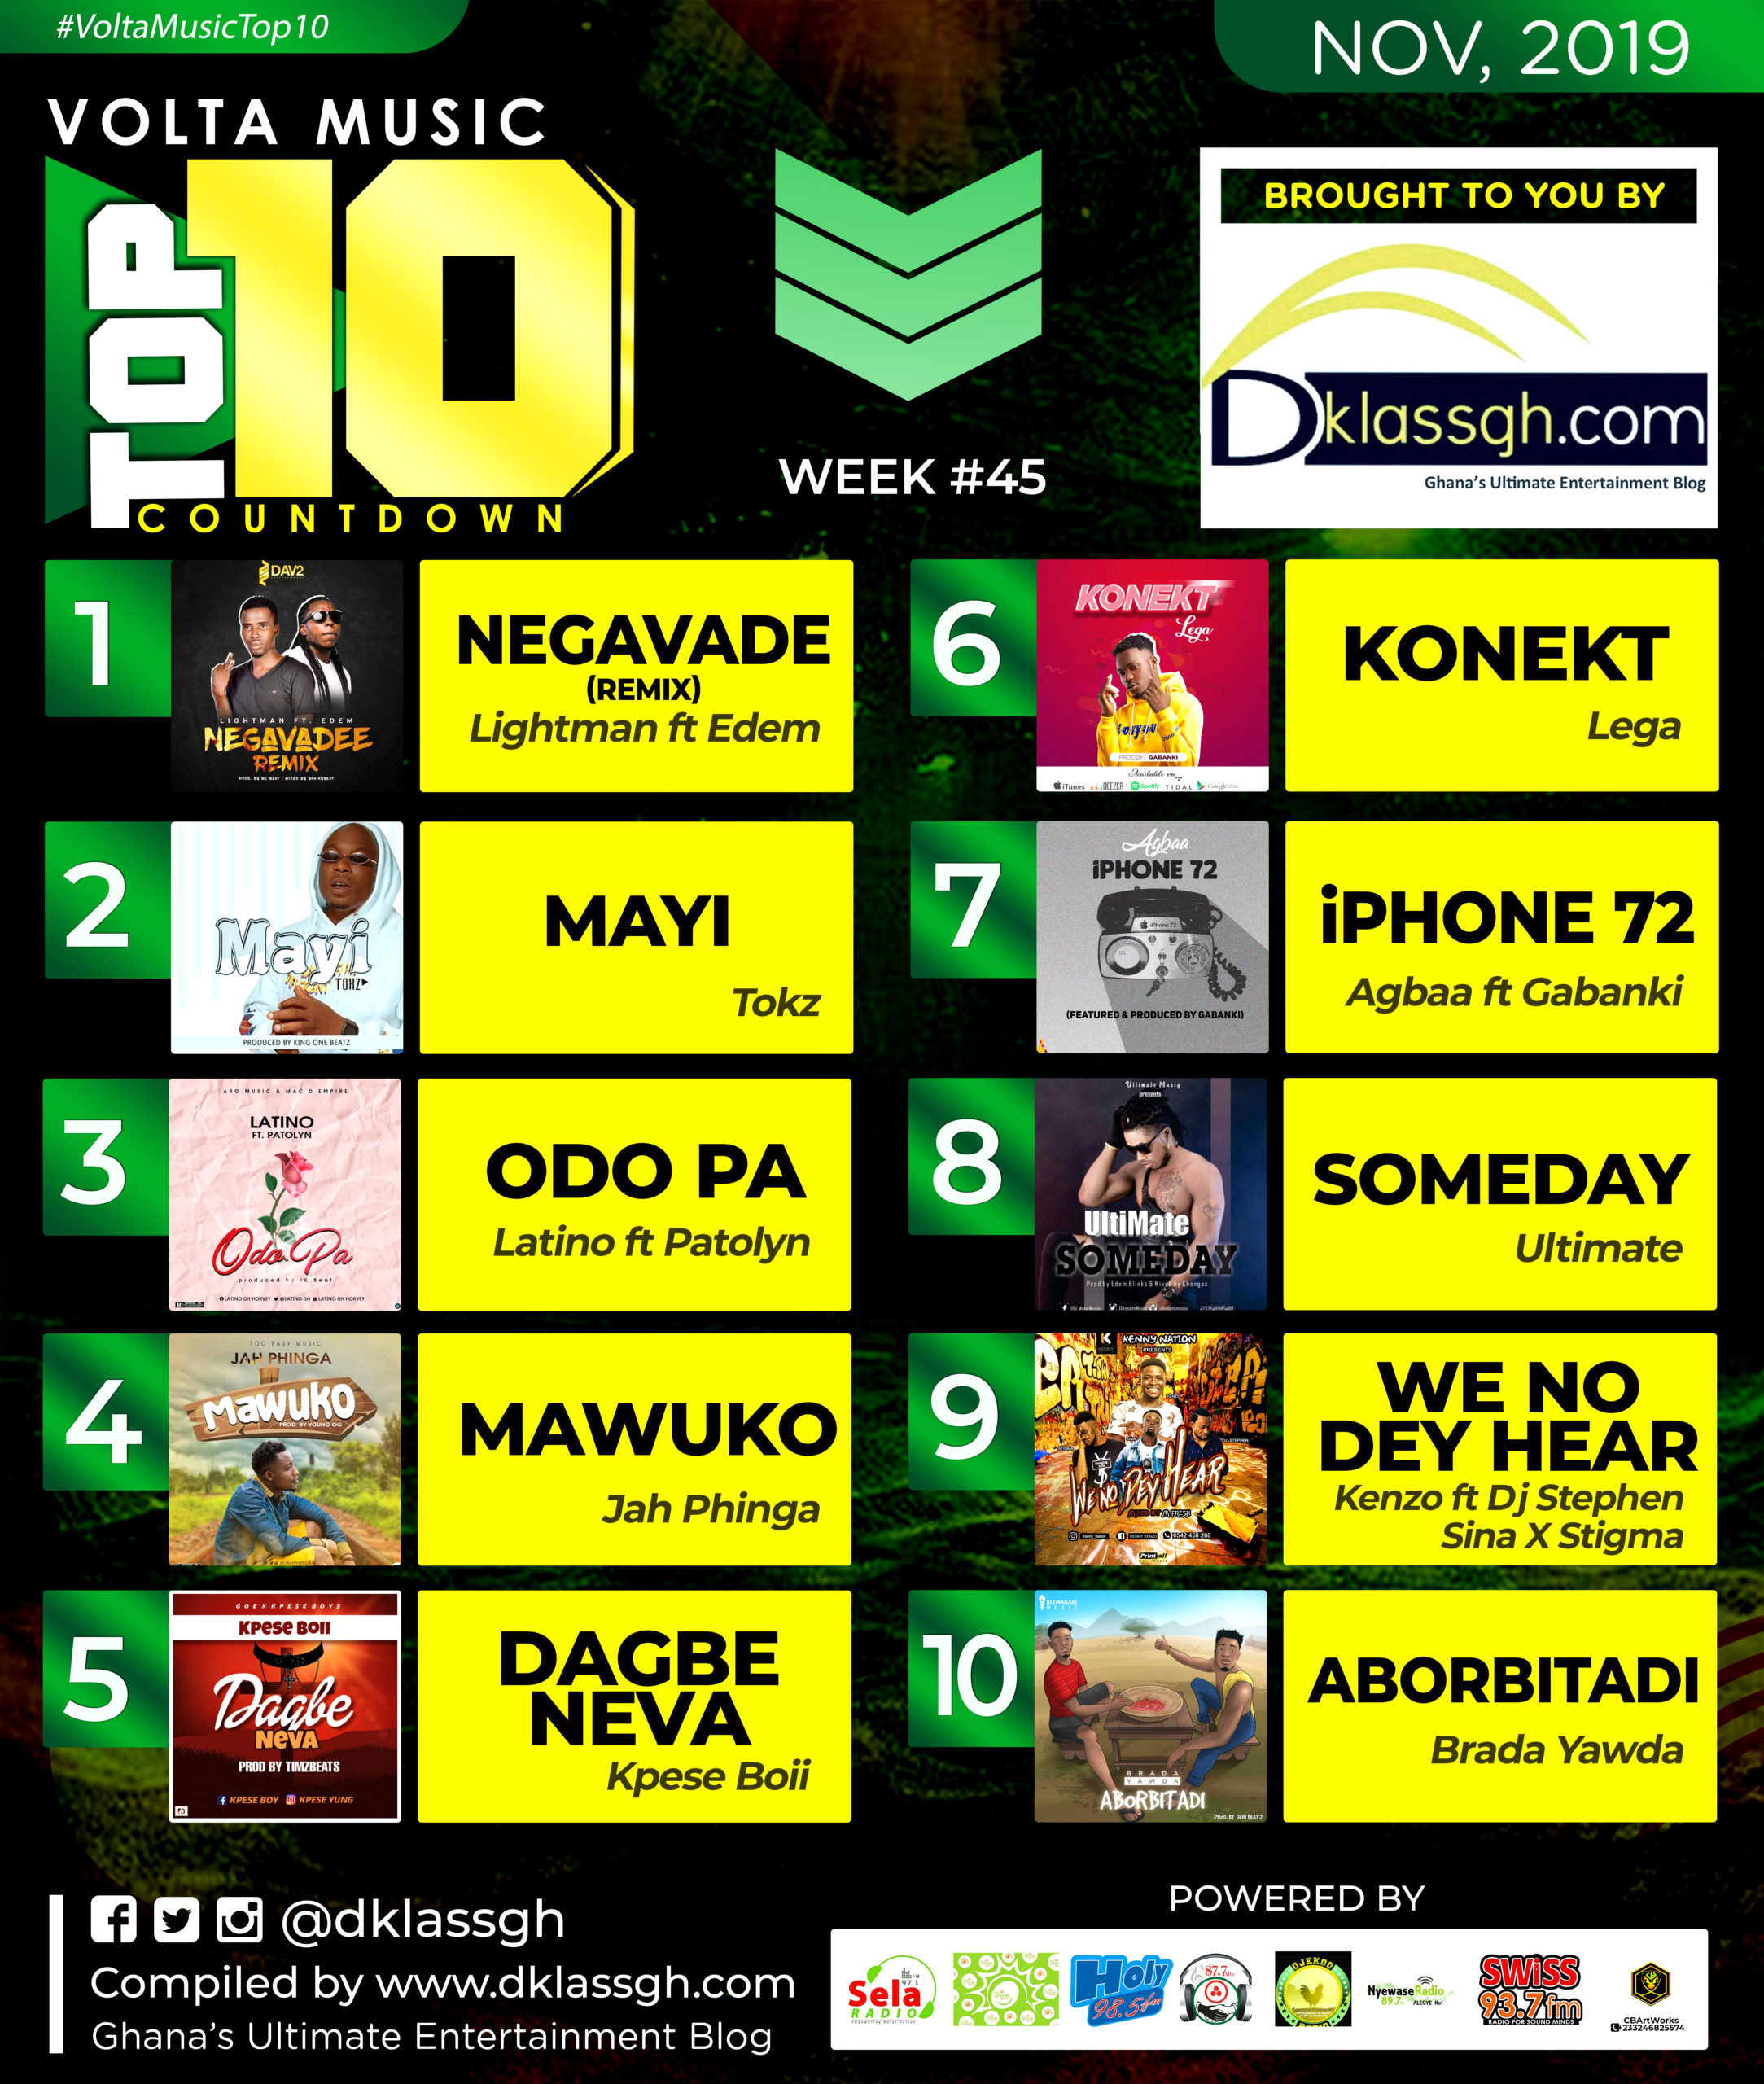 Top 10 music Trending in Volta!! #VoltaMusicTop10 #Week45